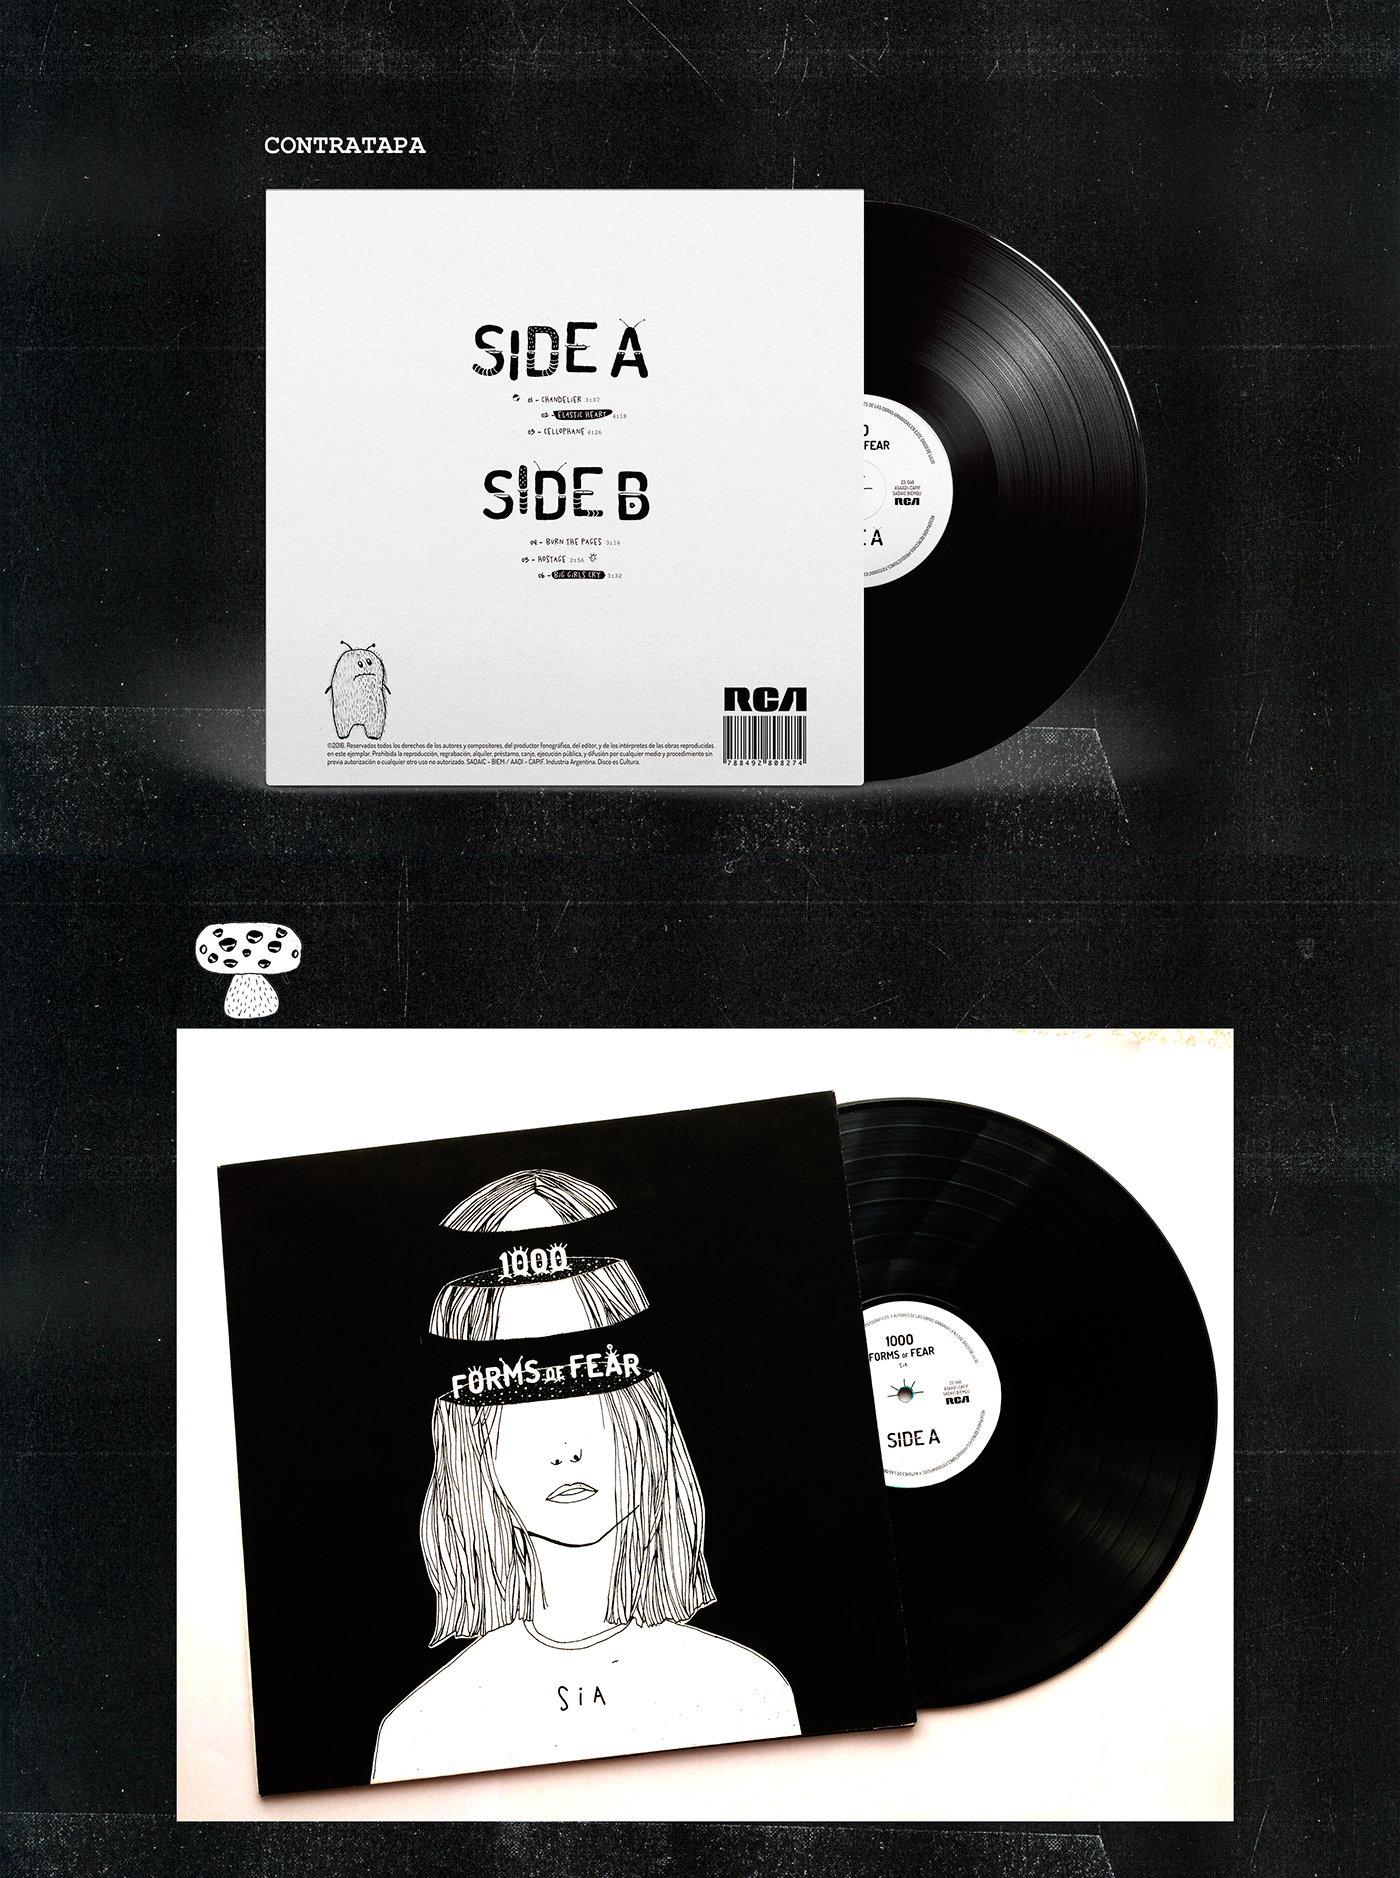 cosgaya tipografia SIA vinilo vinyl LP ilustracion 1000 forms of fear